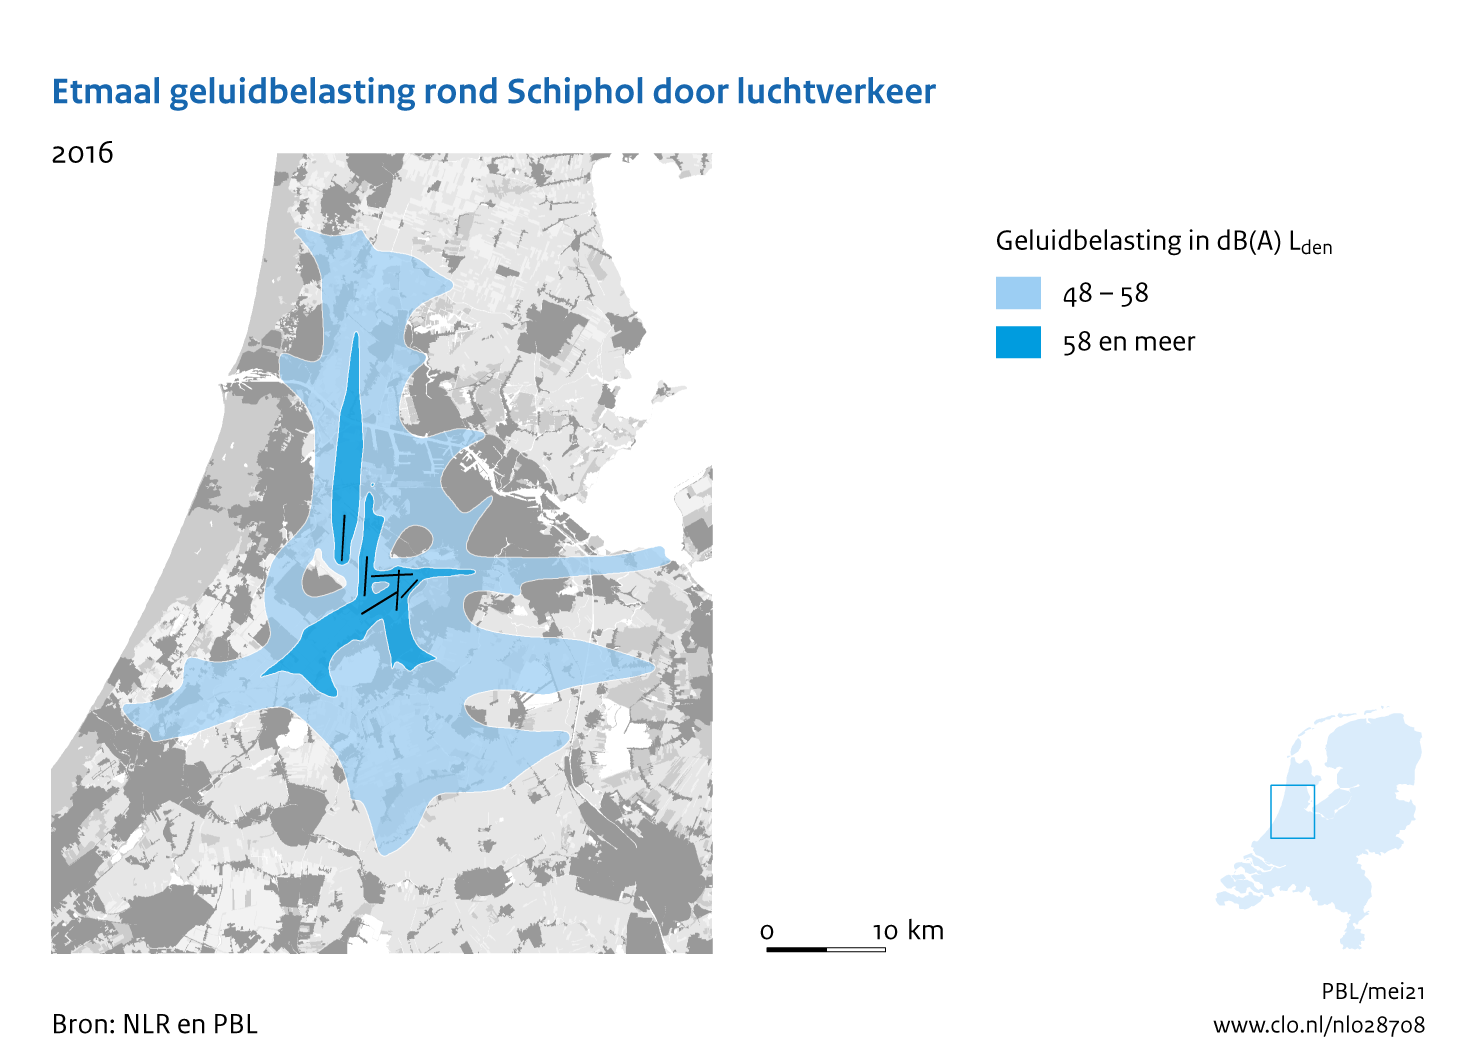 Figuur Etmaal geluidbelasting rond Schiphol door luchtverkeer, 2016. In de rest van de tekst wordt deze figuur uitgebreider uitgelegd.